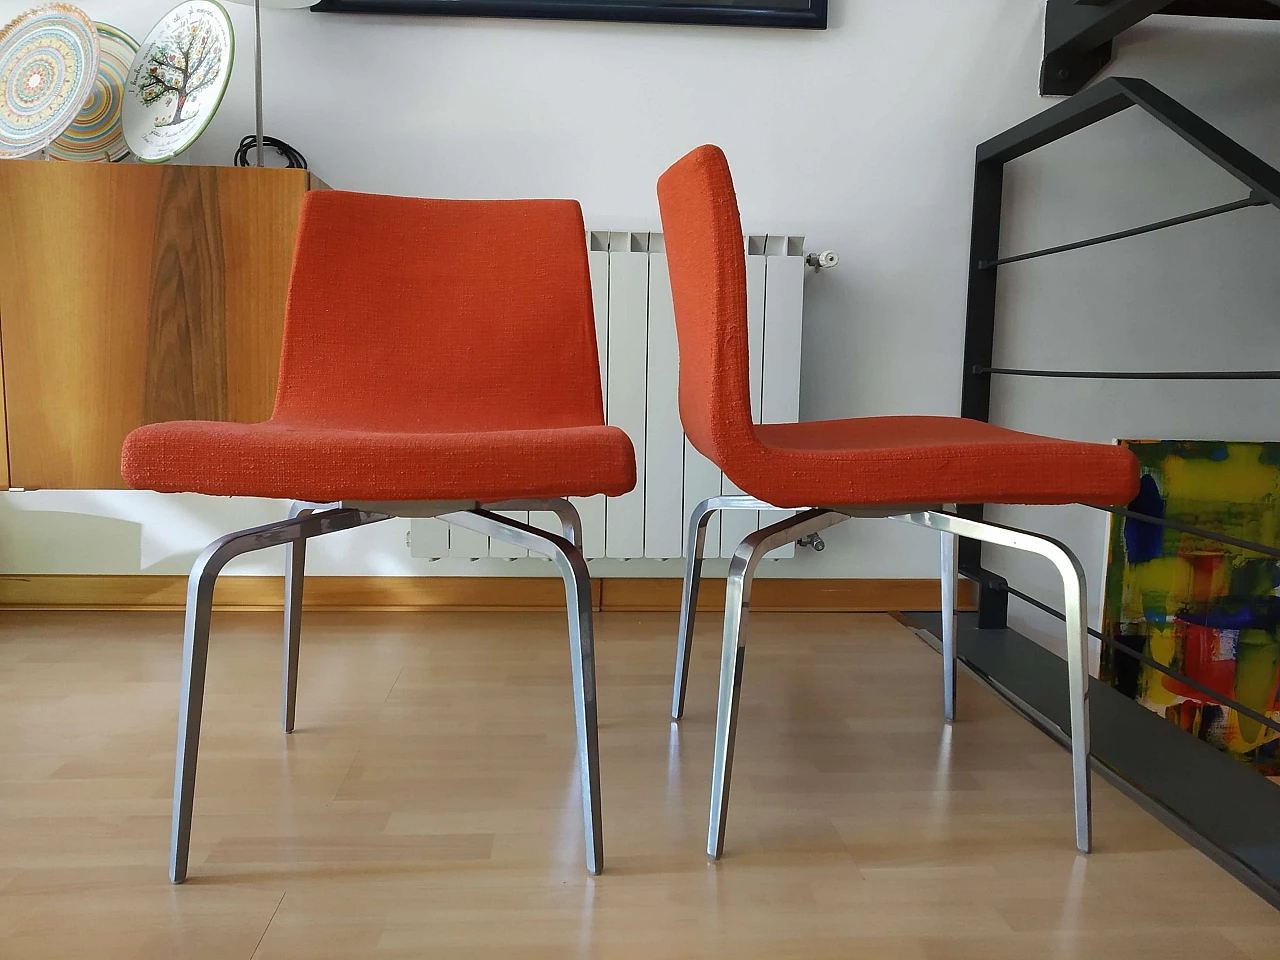 4 Hella Chairs by Mauro Lipparini for MisuraEmme 1477287